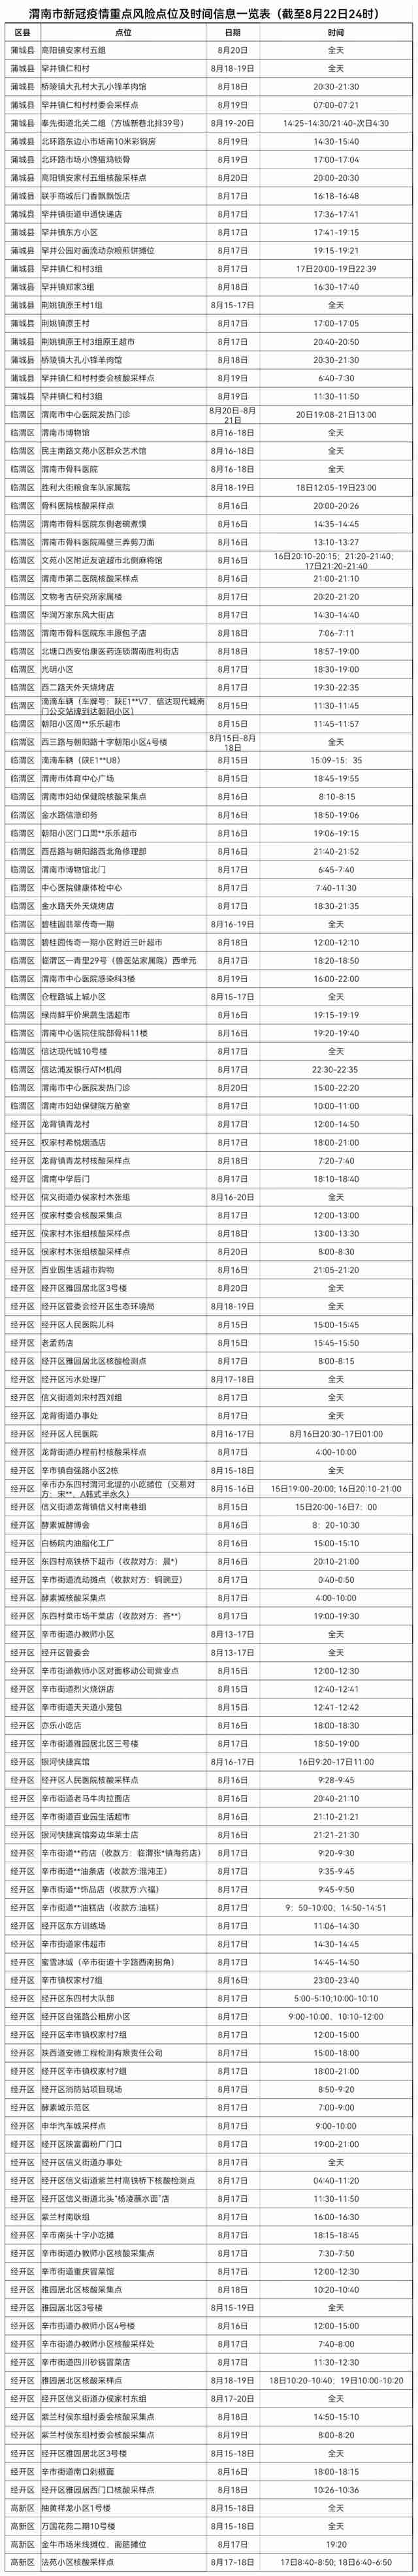 陕西渭南市新冠疫情重点风险点位及时间信息一览表